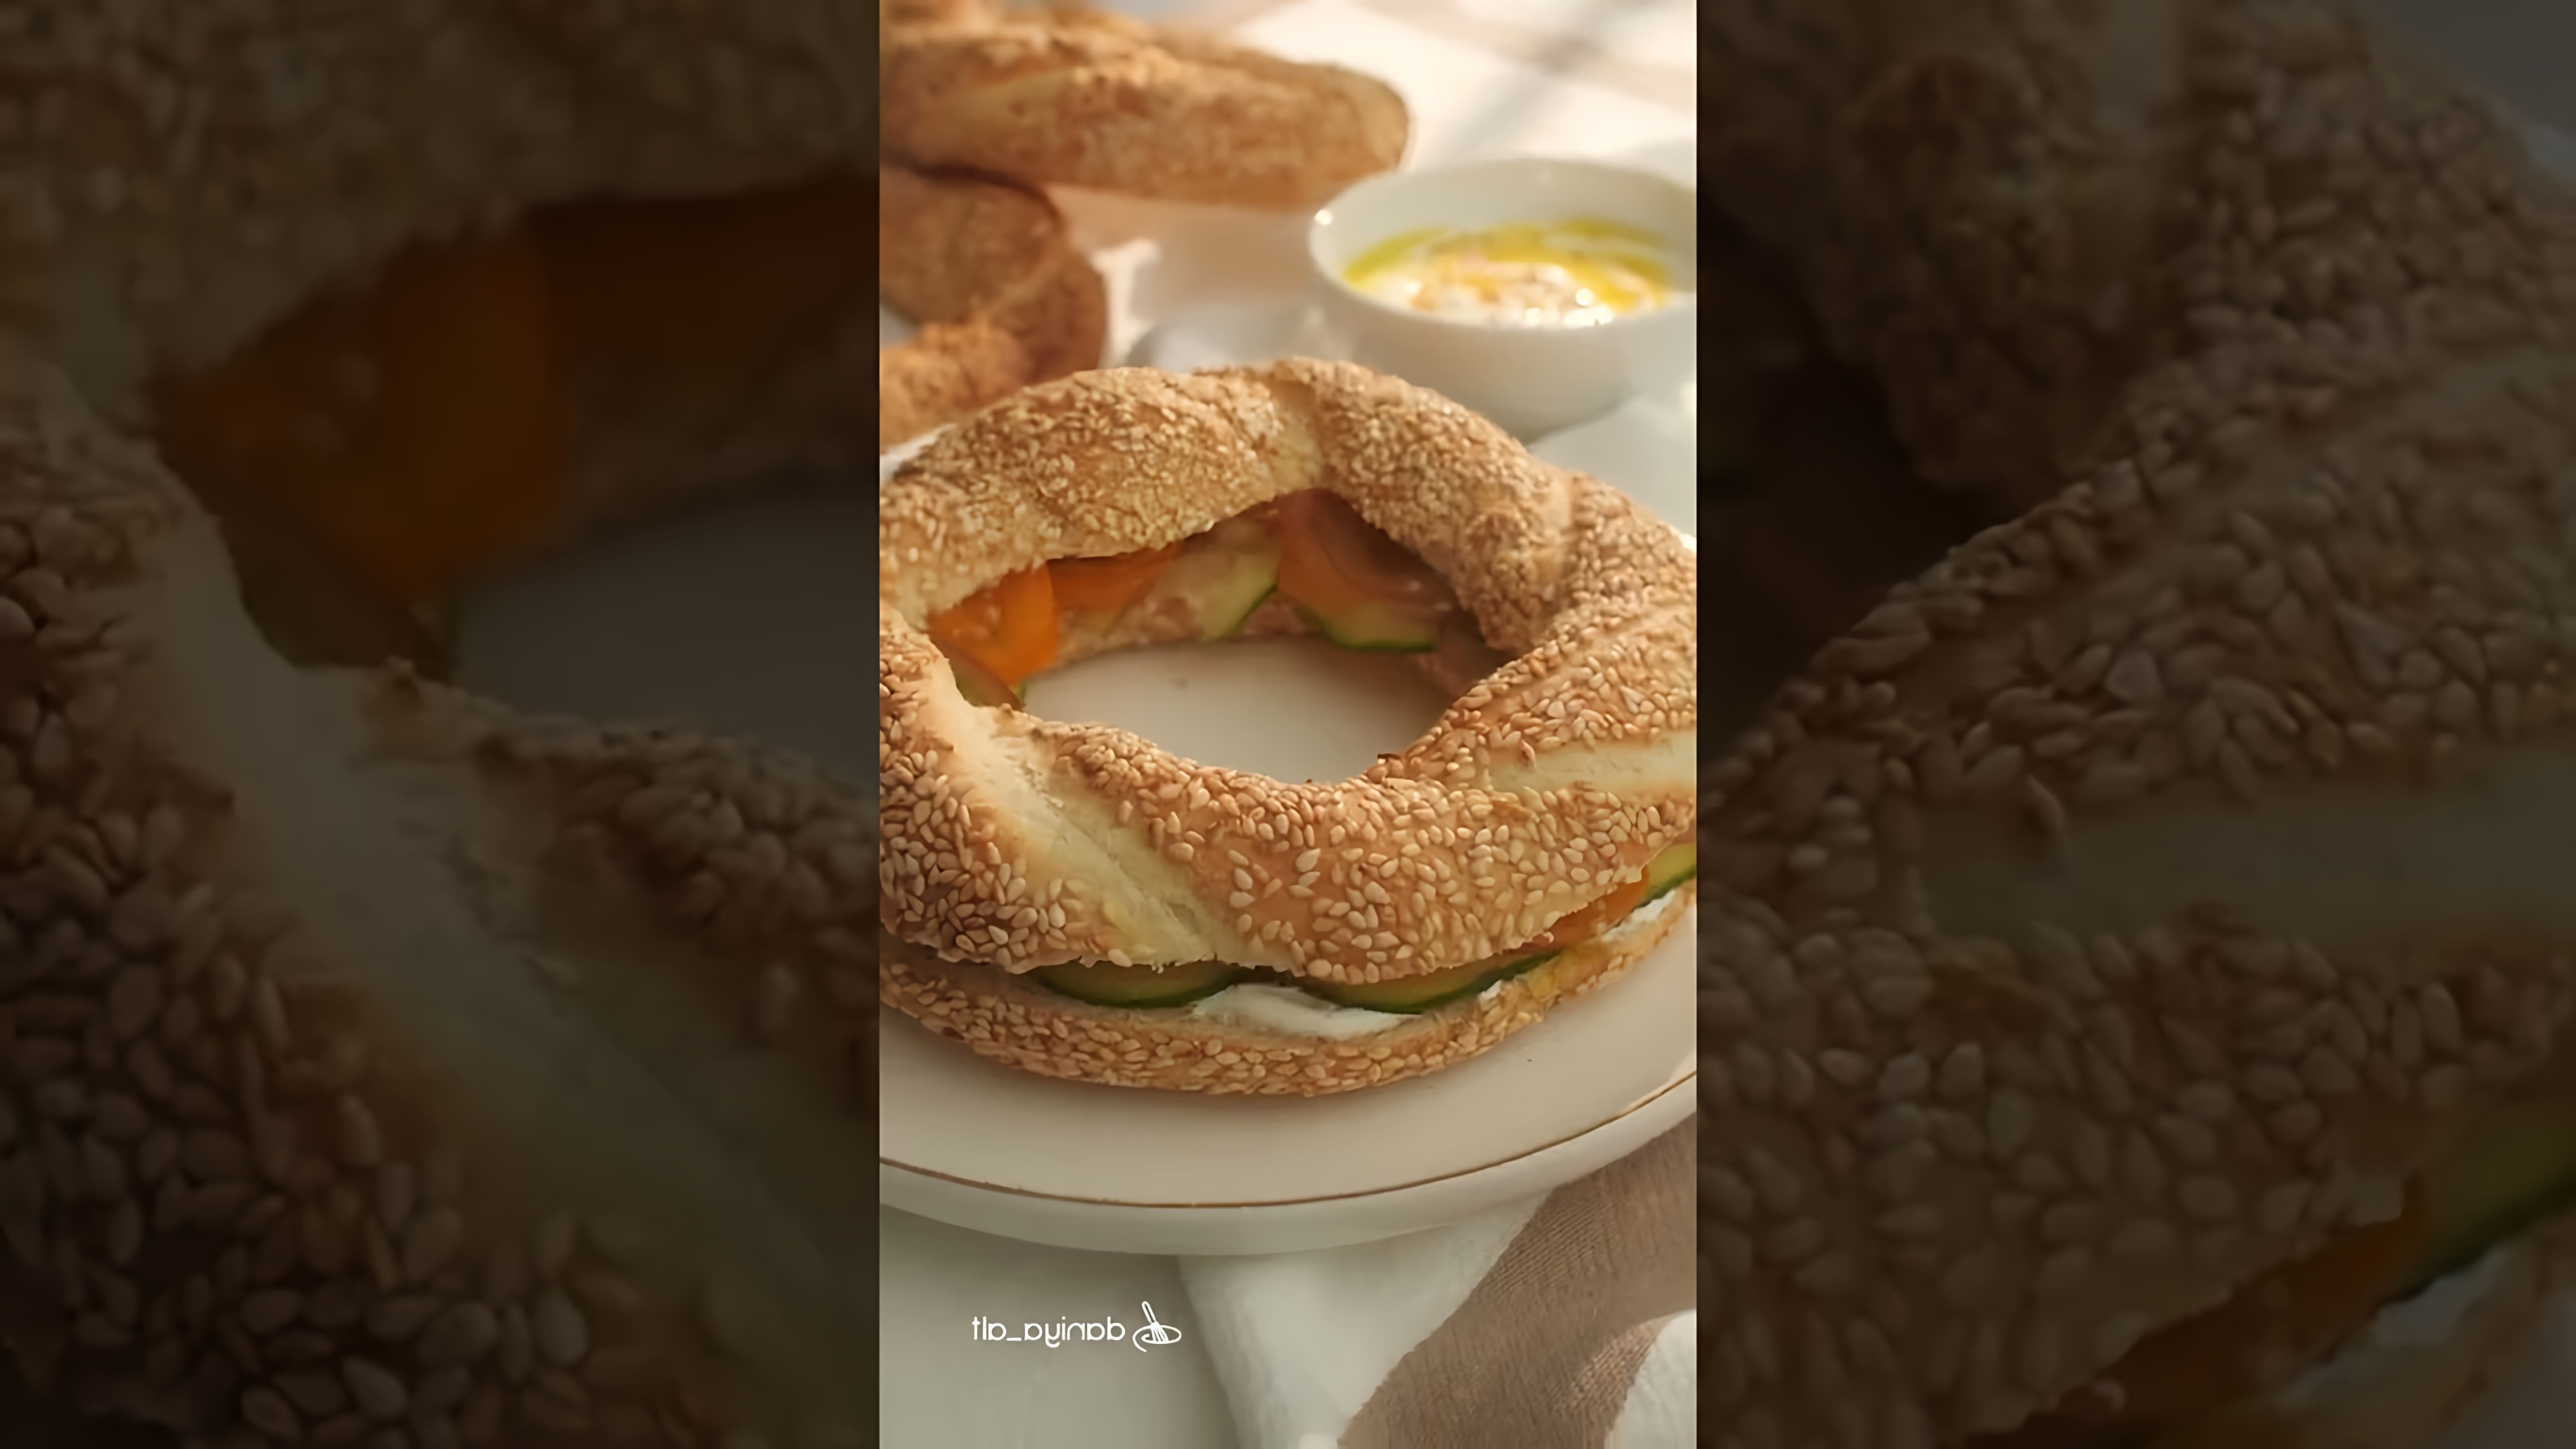 В этом видео демонстрируется процесс приготовления турецких симитов, также известных как турецкий хлеб с кунжутом